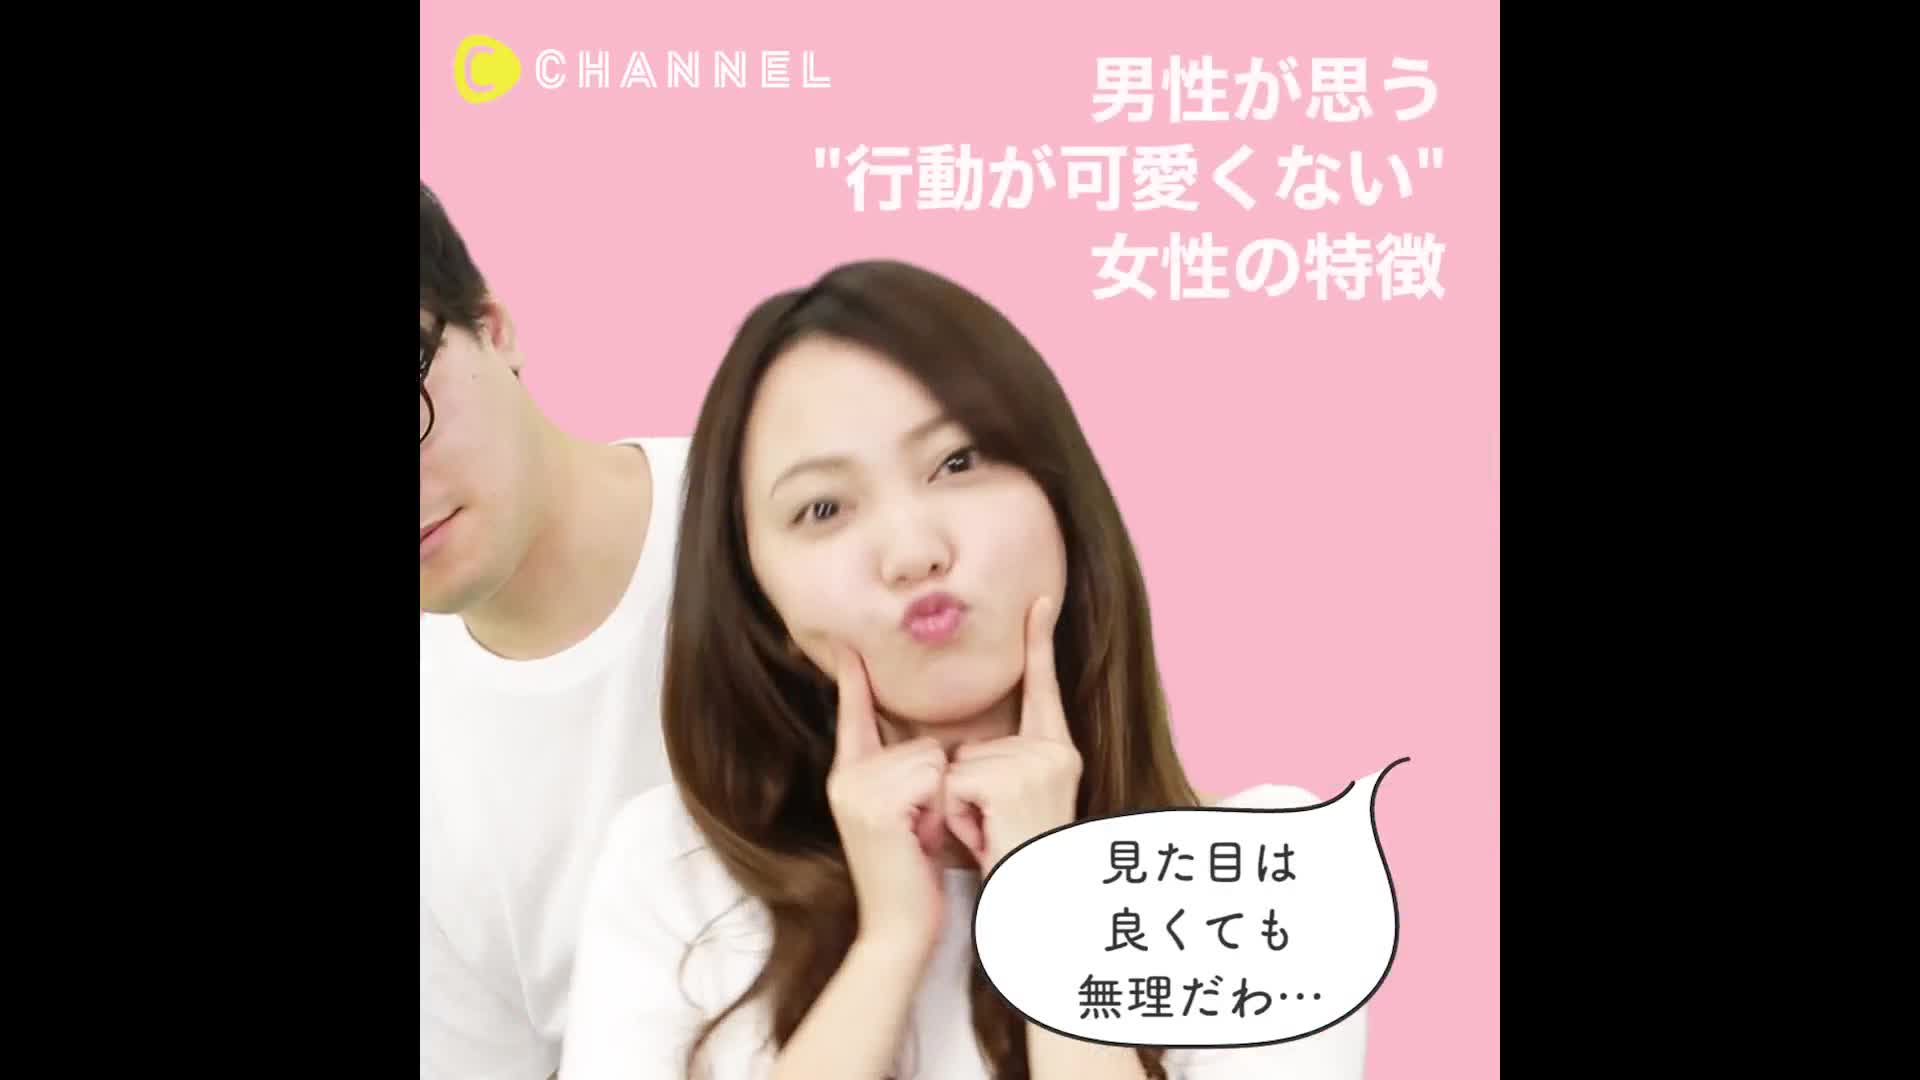 見た目はよくても無理だわ 男性が思う 行動が可愛くない 女性の特徴 C Channel Yahoo Japan